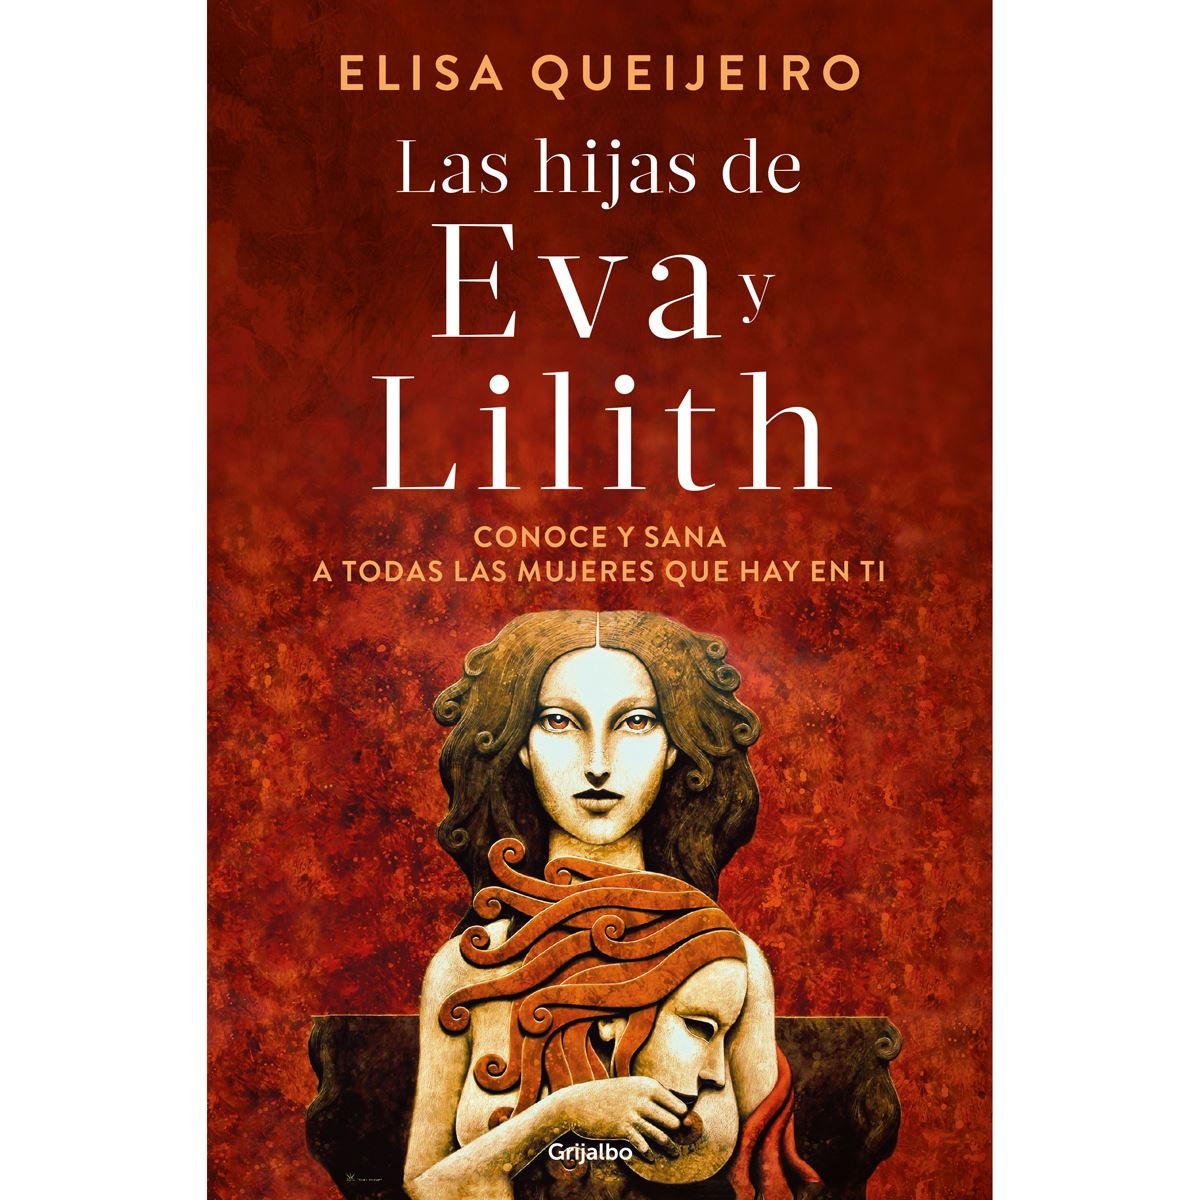 Las hijas de Eva y Lilith